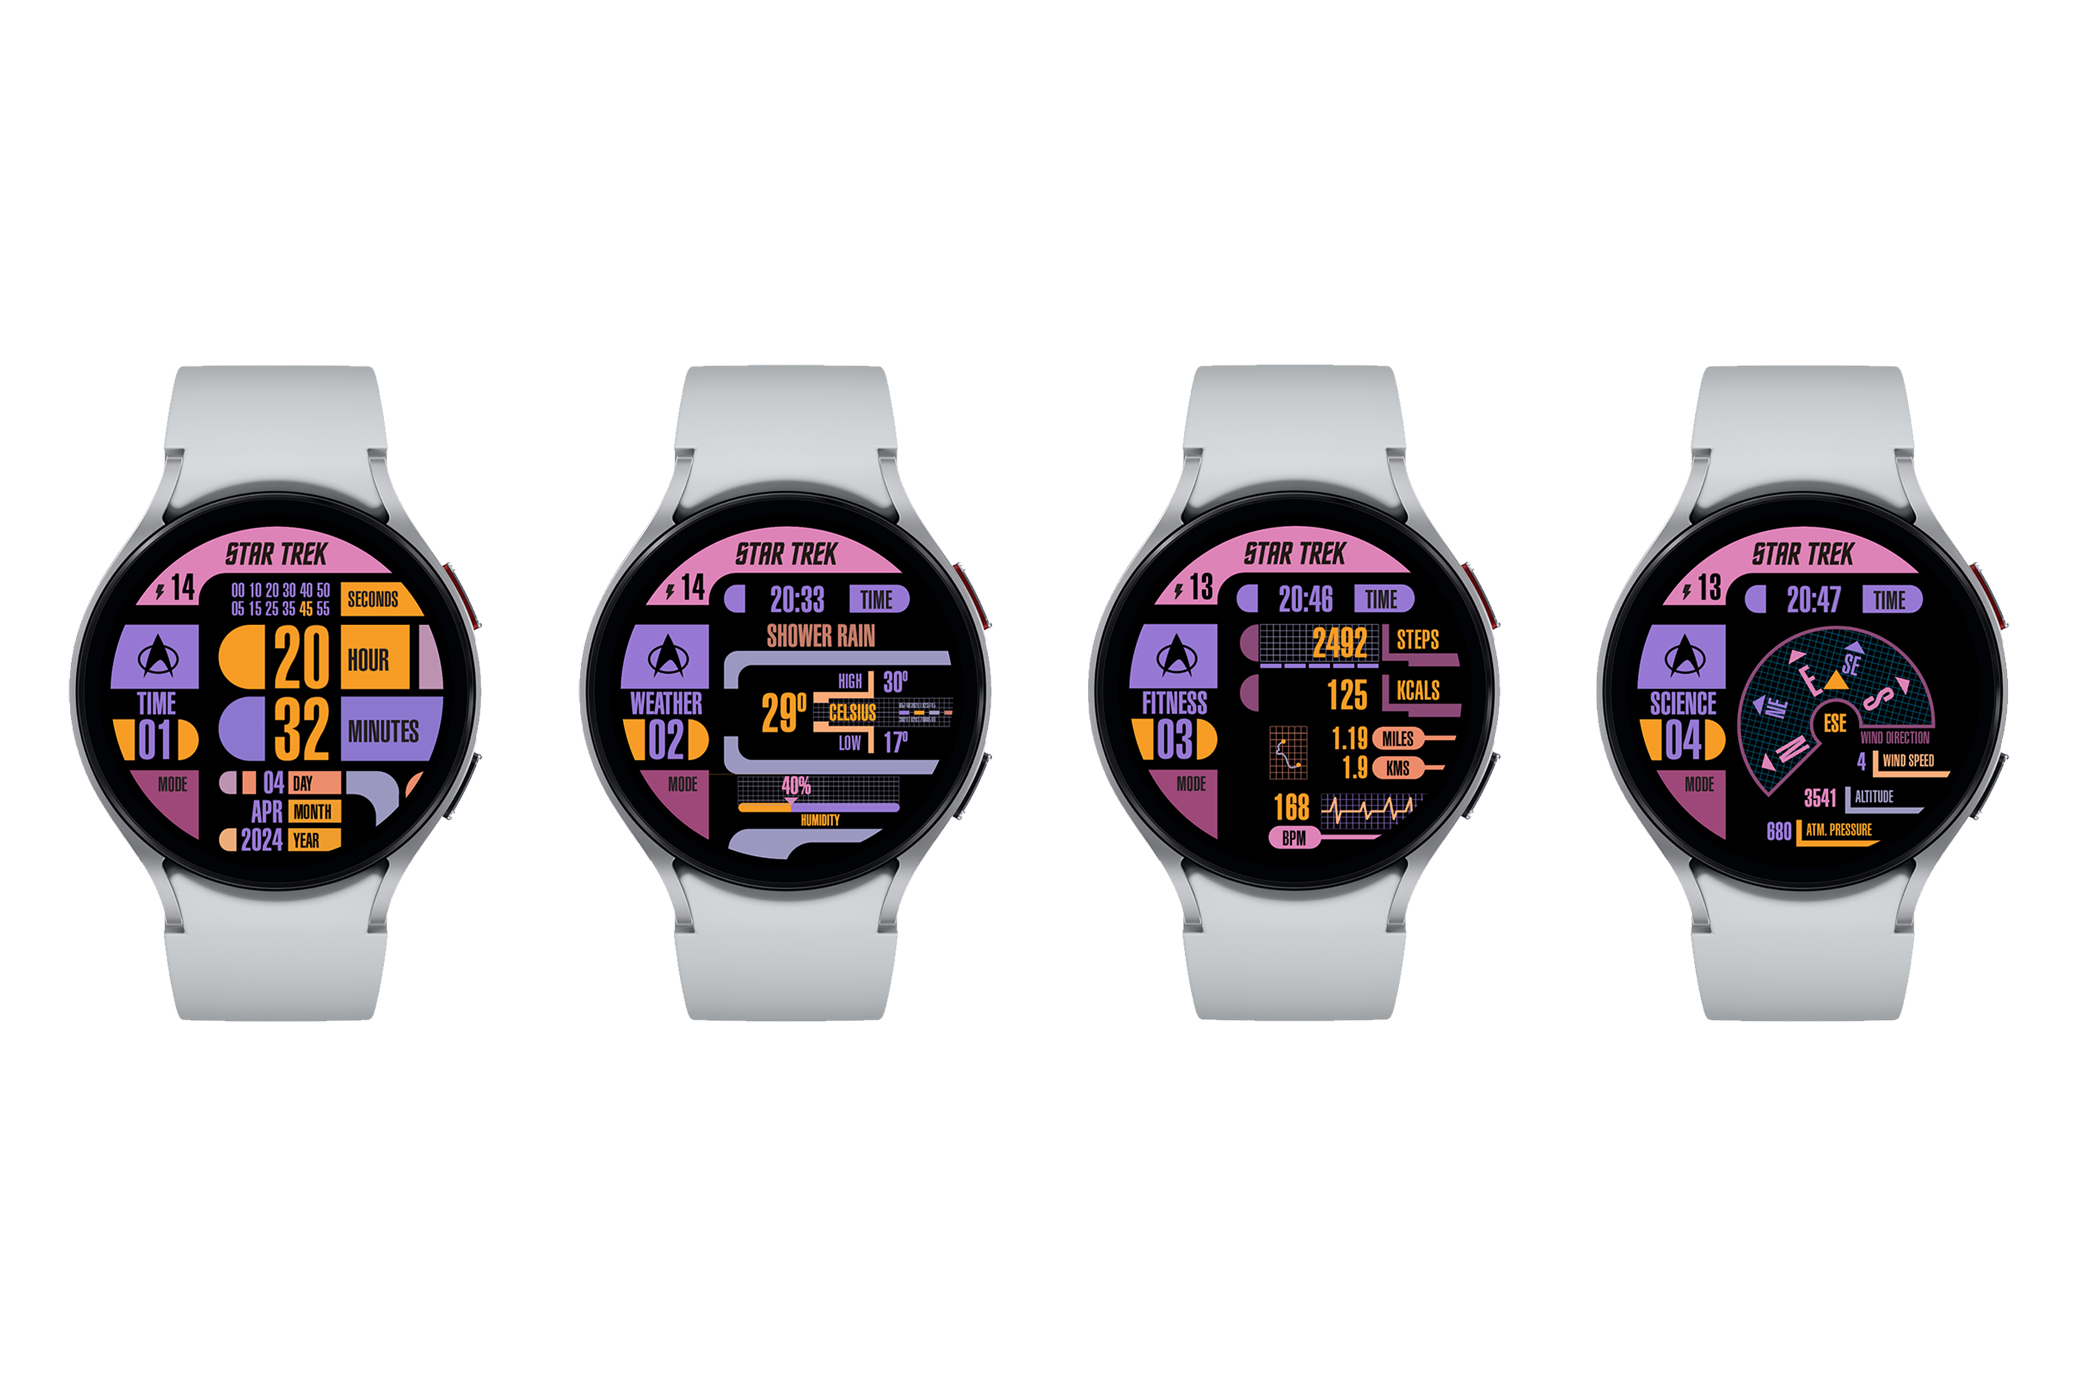 LCARS 2.0 Start Trek Facer Wear OS watch face for Samsung Galaxy Watch.